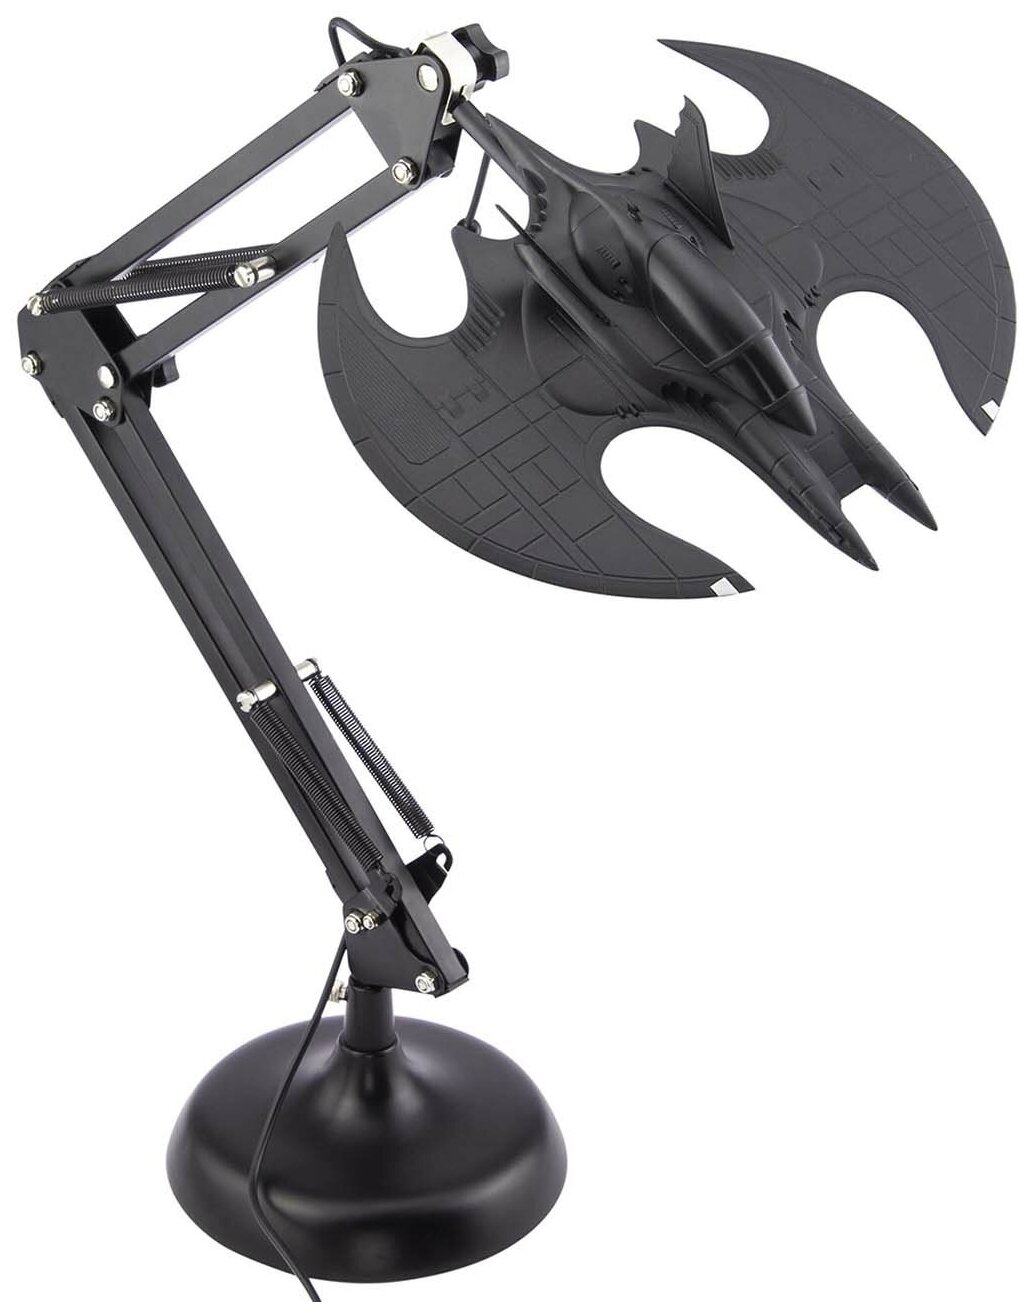 Светильник Paladone Настольная лампа Batman Batwing Posable